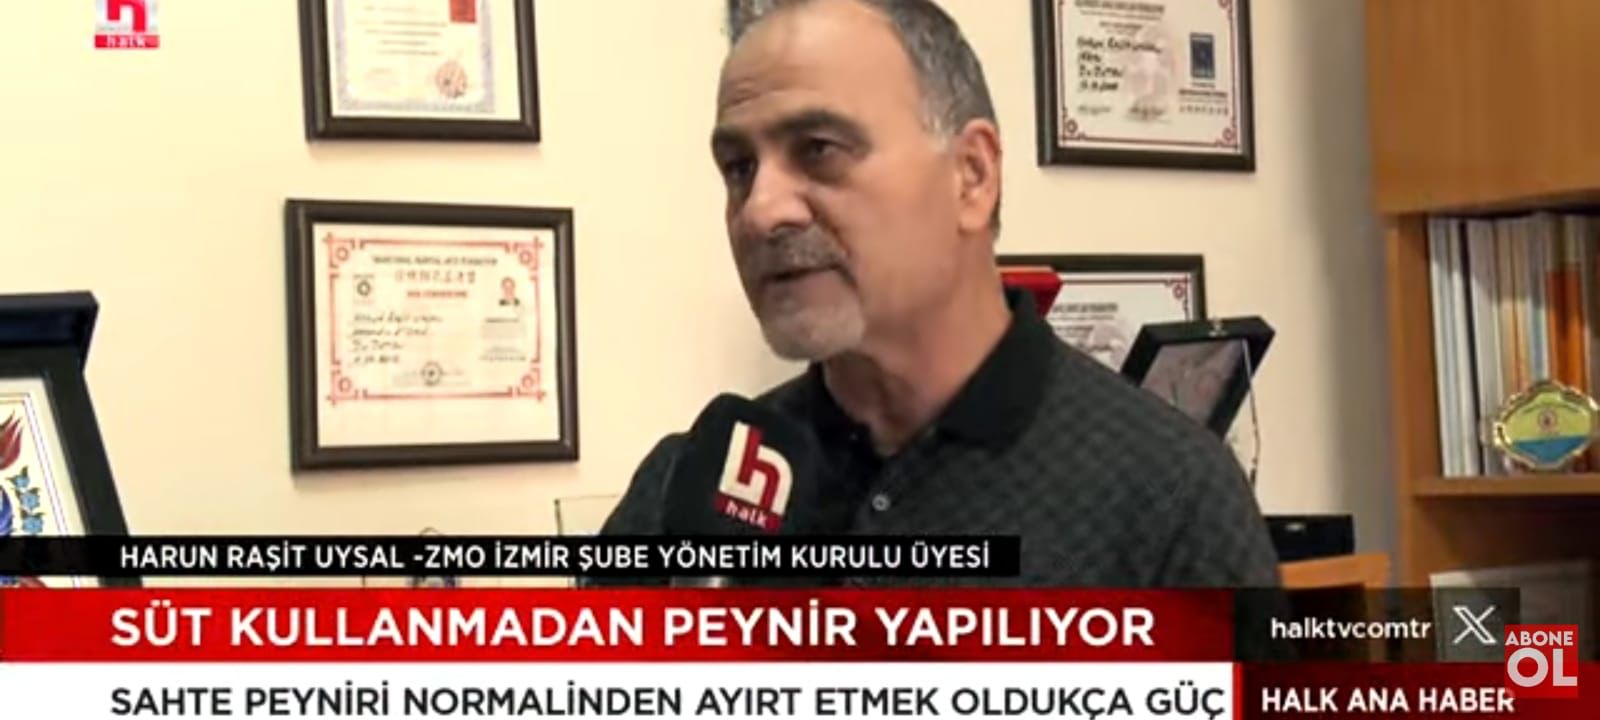 HALK TV- "İRFAN DEĞİRMENCİ İLE HALK ANA HABER" PROGRAMI 